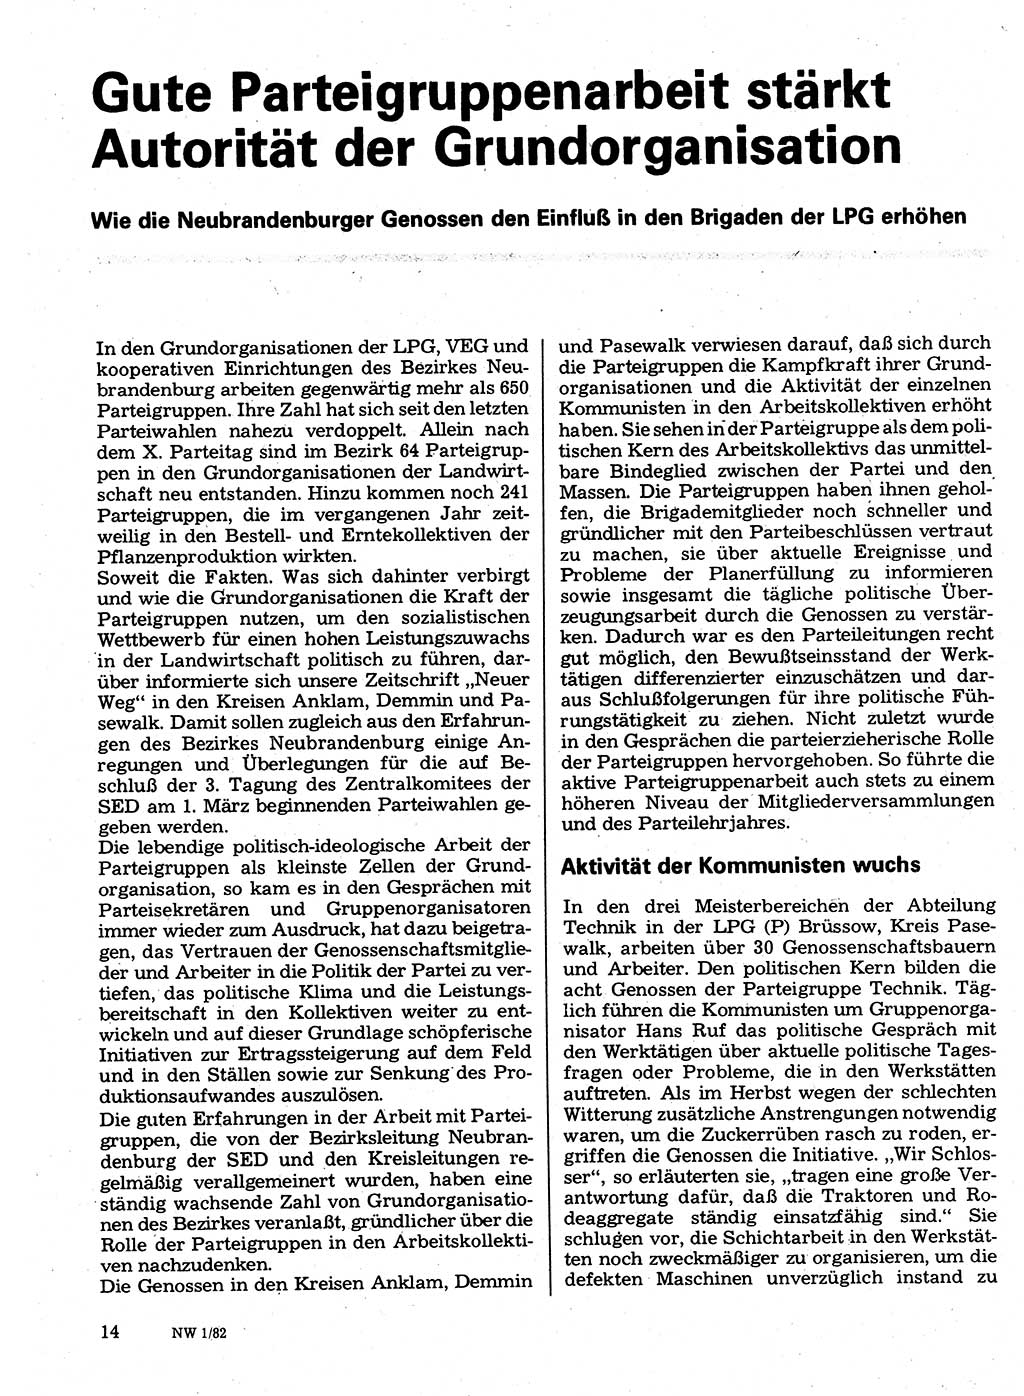 Neuer Weg (NW), Organ des Zentralkomitees (ZK) der SED (Sozialistische Einheitspartei Deutschlands) für Fragen des Parteilebens, 37. Jahrgang [Deutsche Demokratische Republik (DDR)] 1982, Seite 14 (NW ZK SED DDR 1982, S. 14)